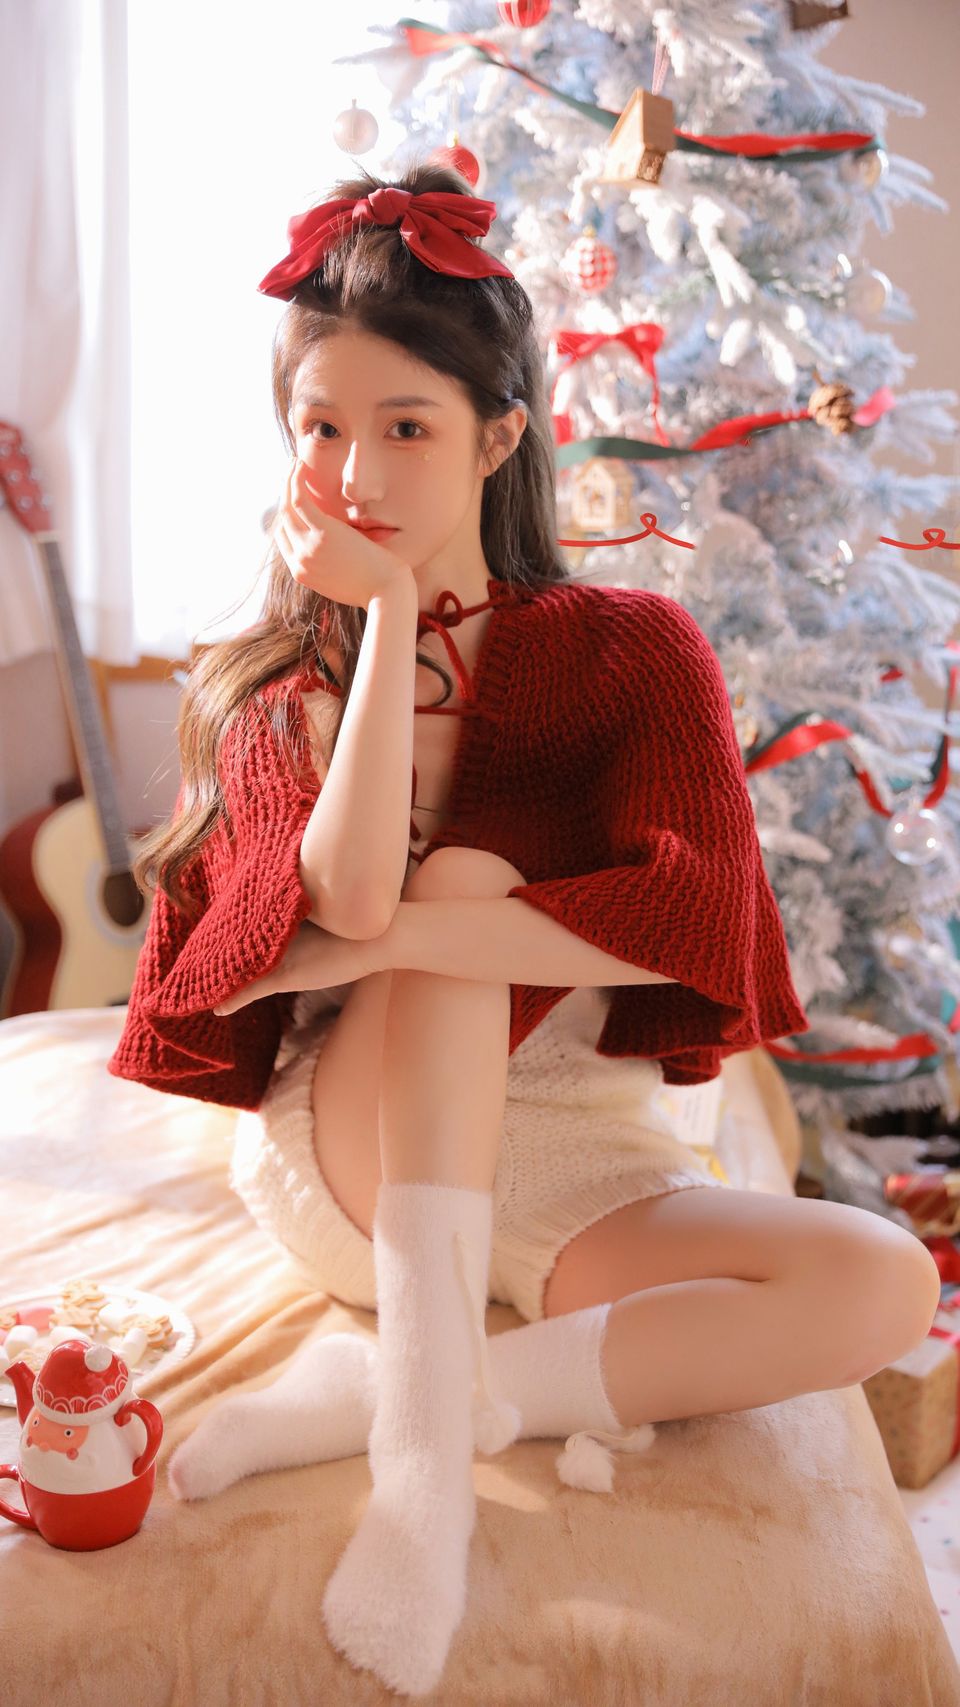 圣诞节 红色毛衣可爱美女 白色袜子 蝴蝶结 竖屏手机壁纸 4k-PixStock 源像素